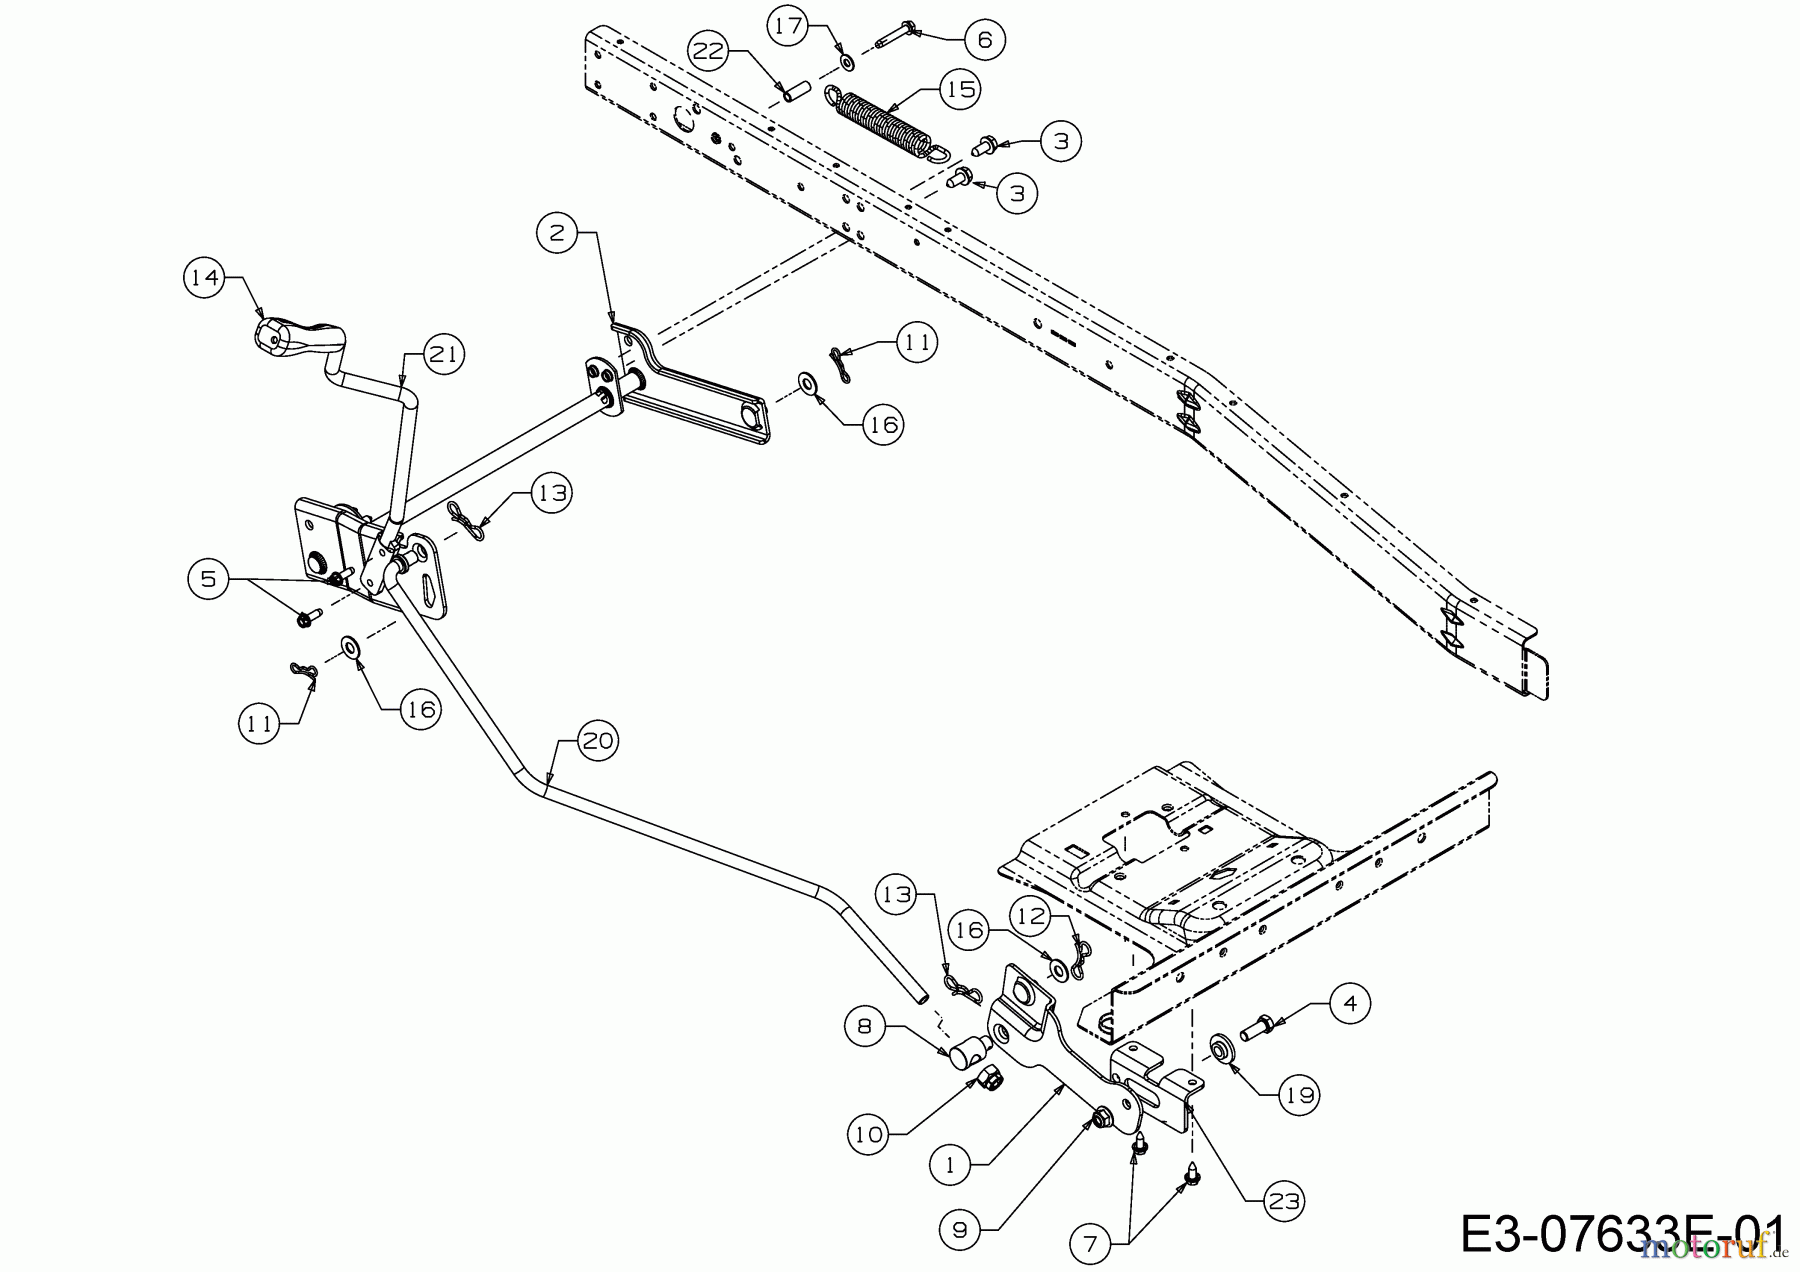  WOLF-Garten Expert Rasentraktoren Scooter Pro Hydro 13A221HD650  (2016) Mähwerksaushebung